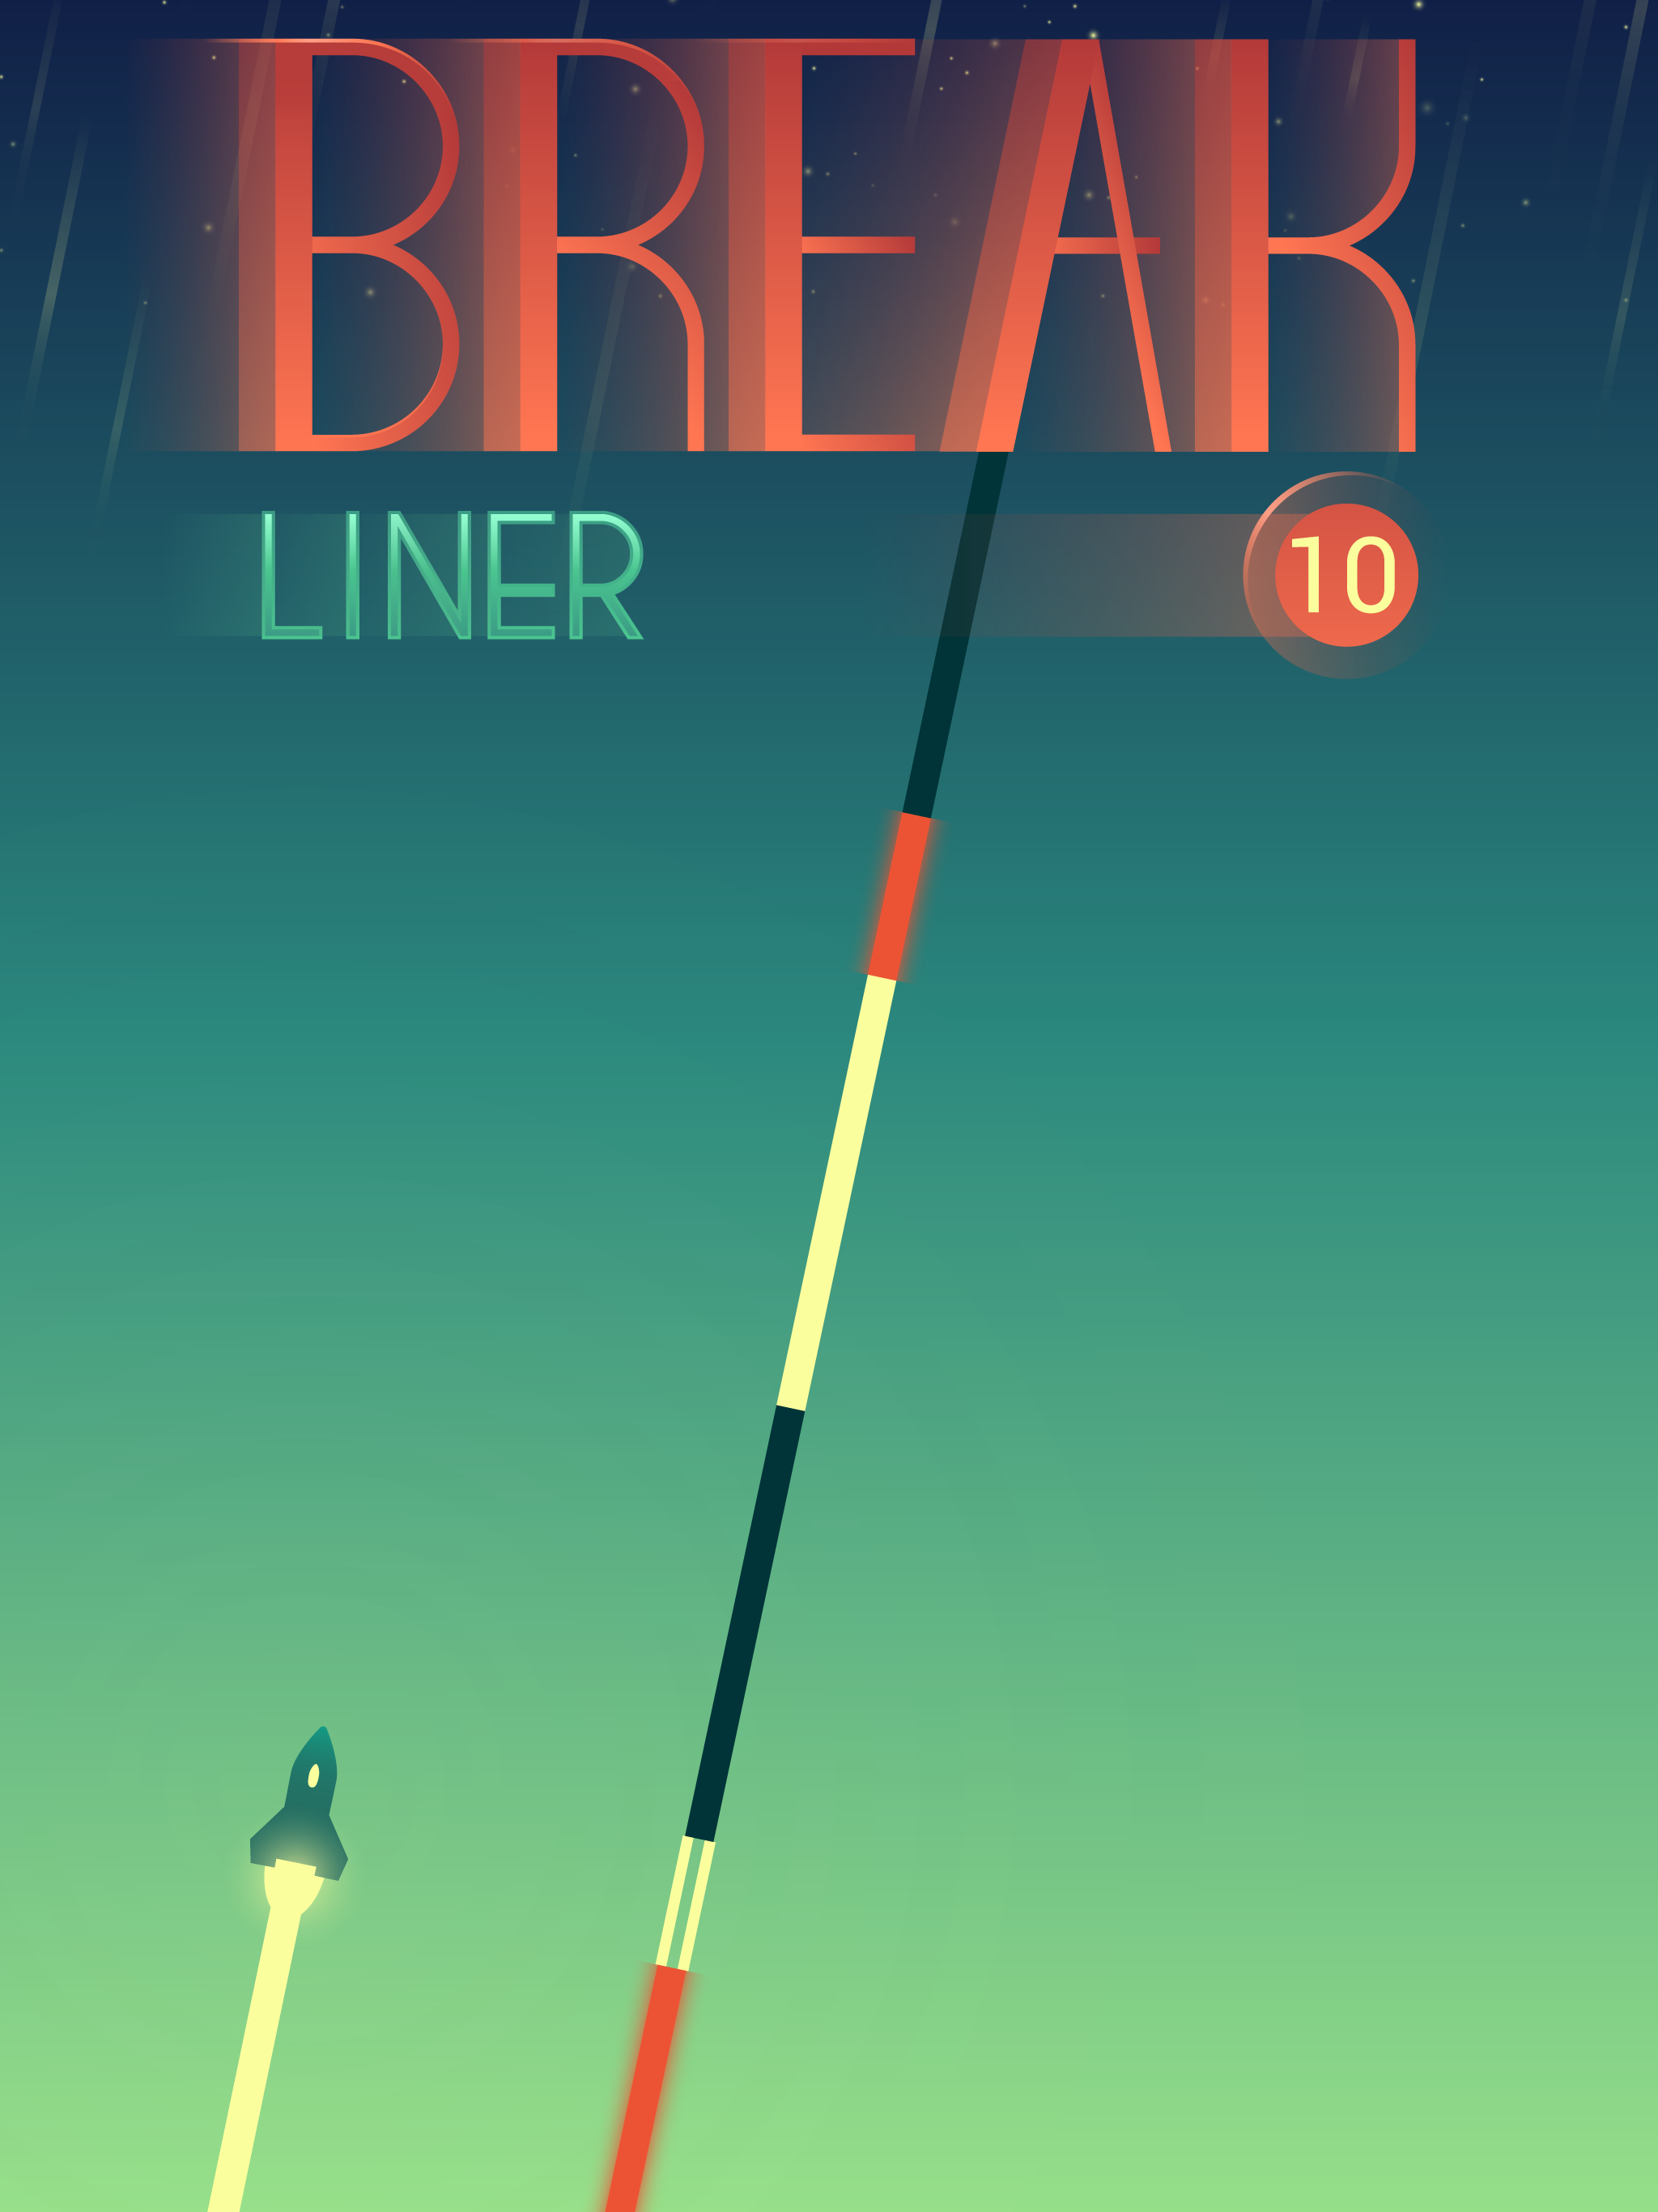 Break Liner screenshot game